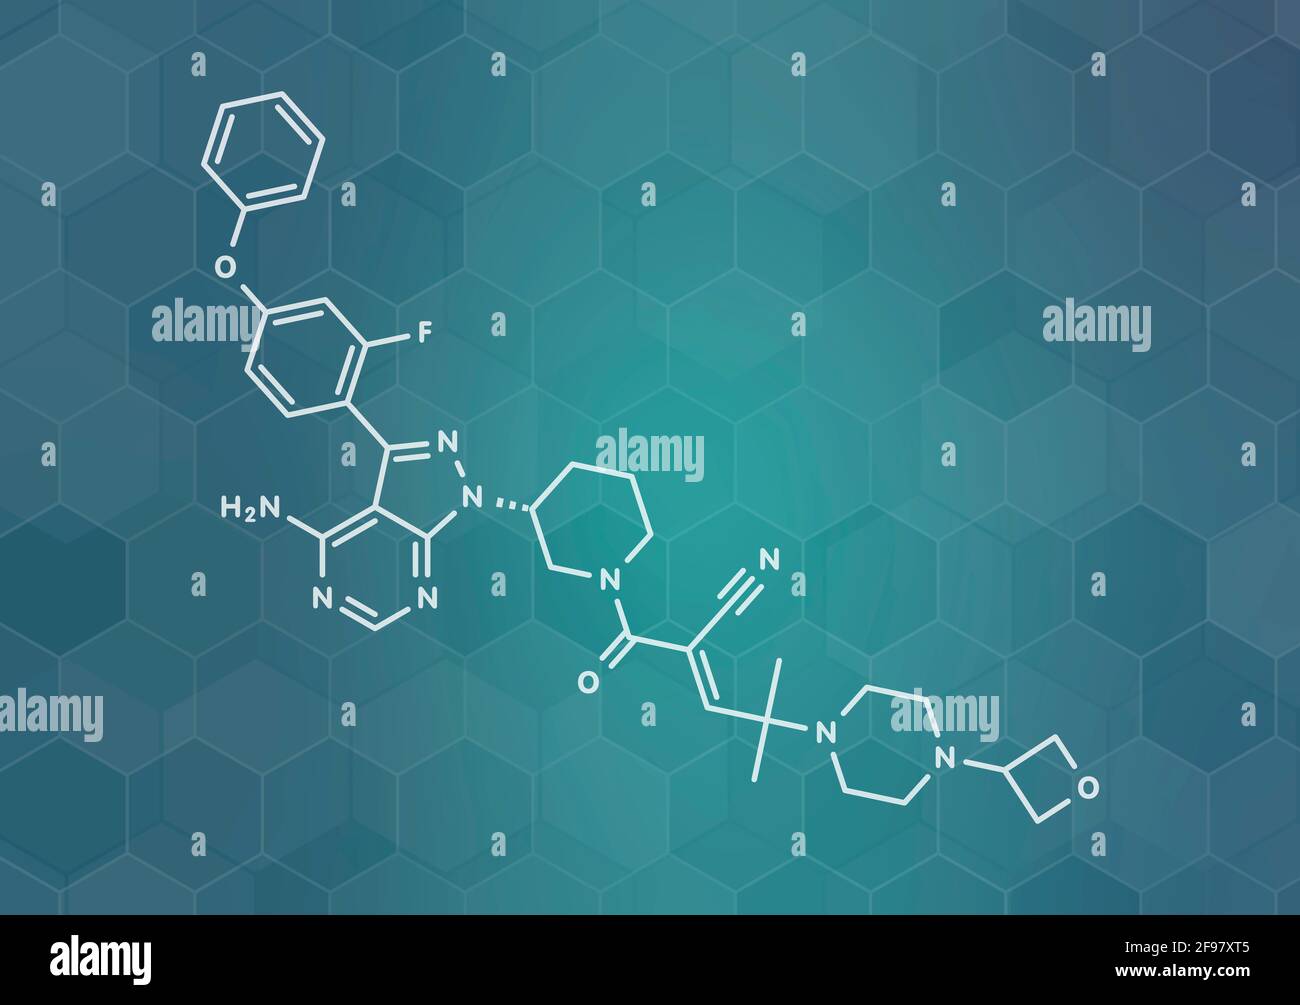 Rilzabrutinib drug molecule, illustration Stock Photo